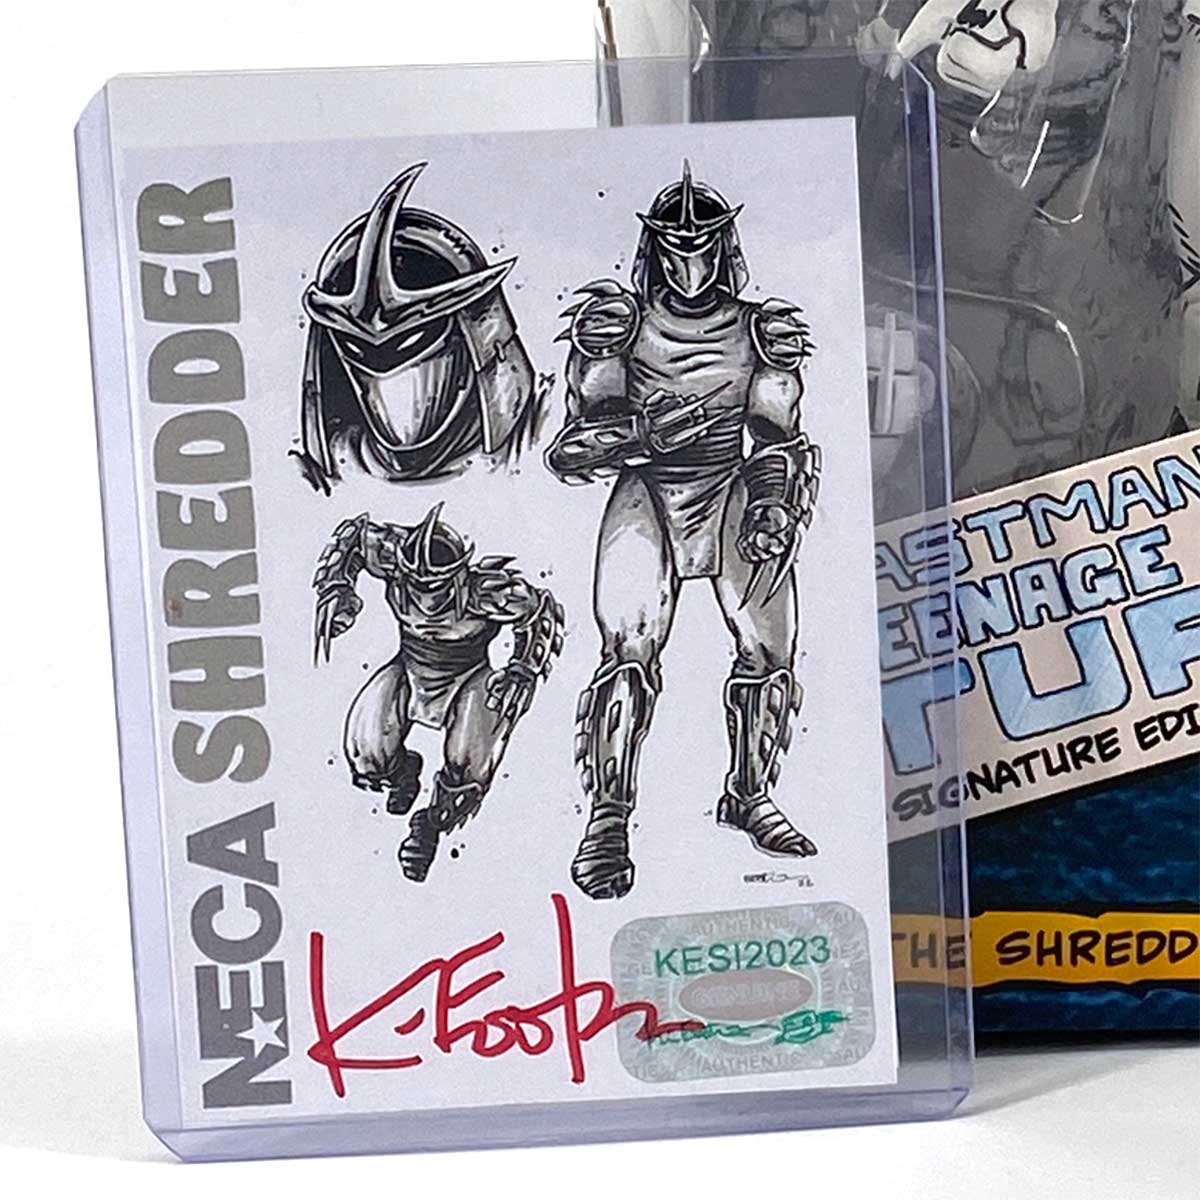 https://fan.kevineastmanstudios.com/wp-content/uploads/2023/04/shredder-card-front.jpg